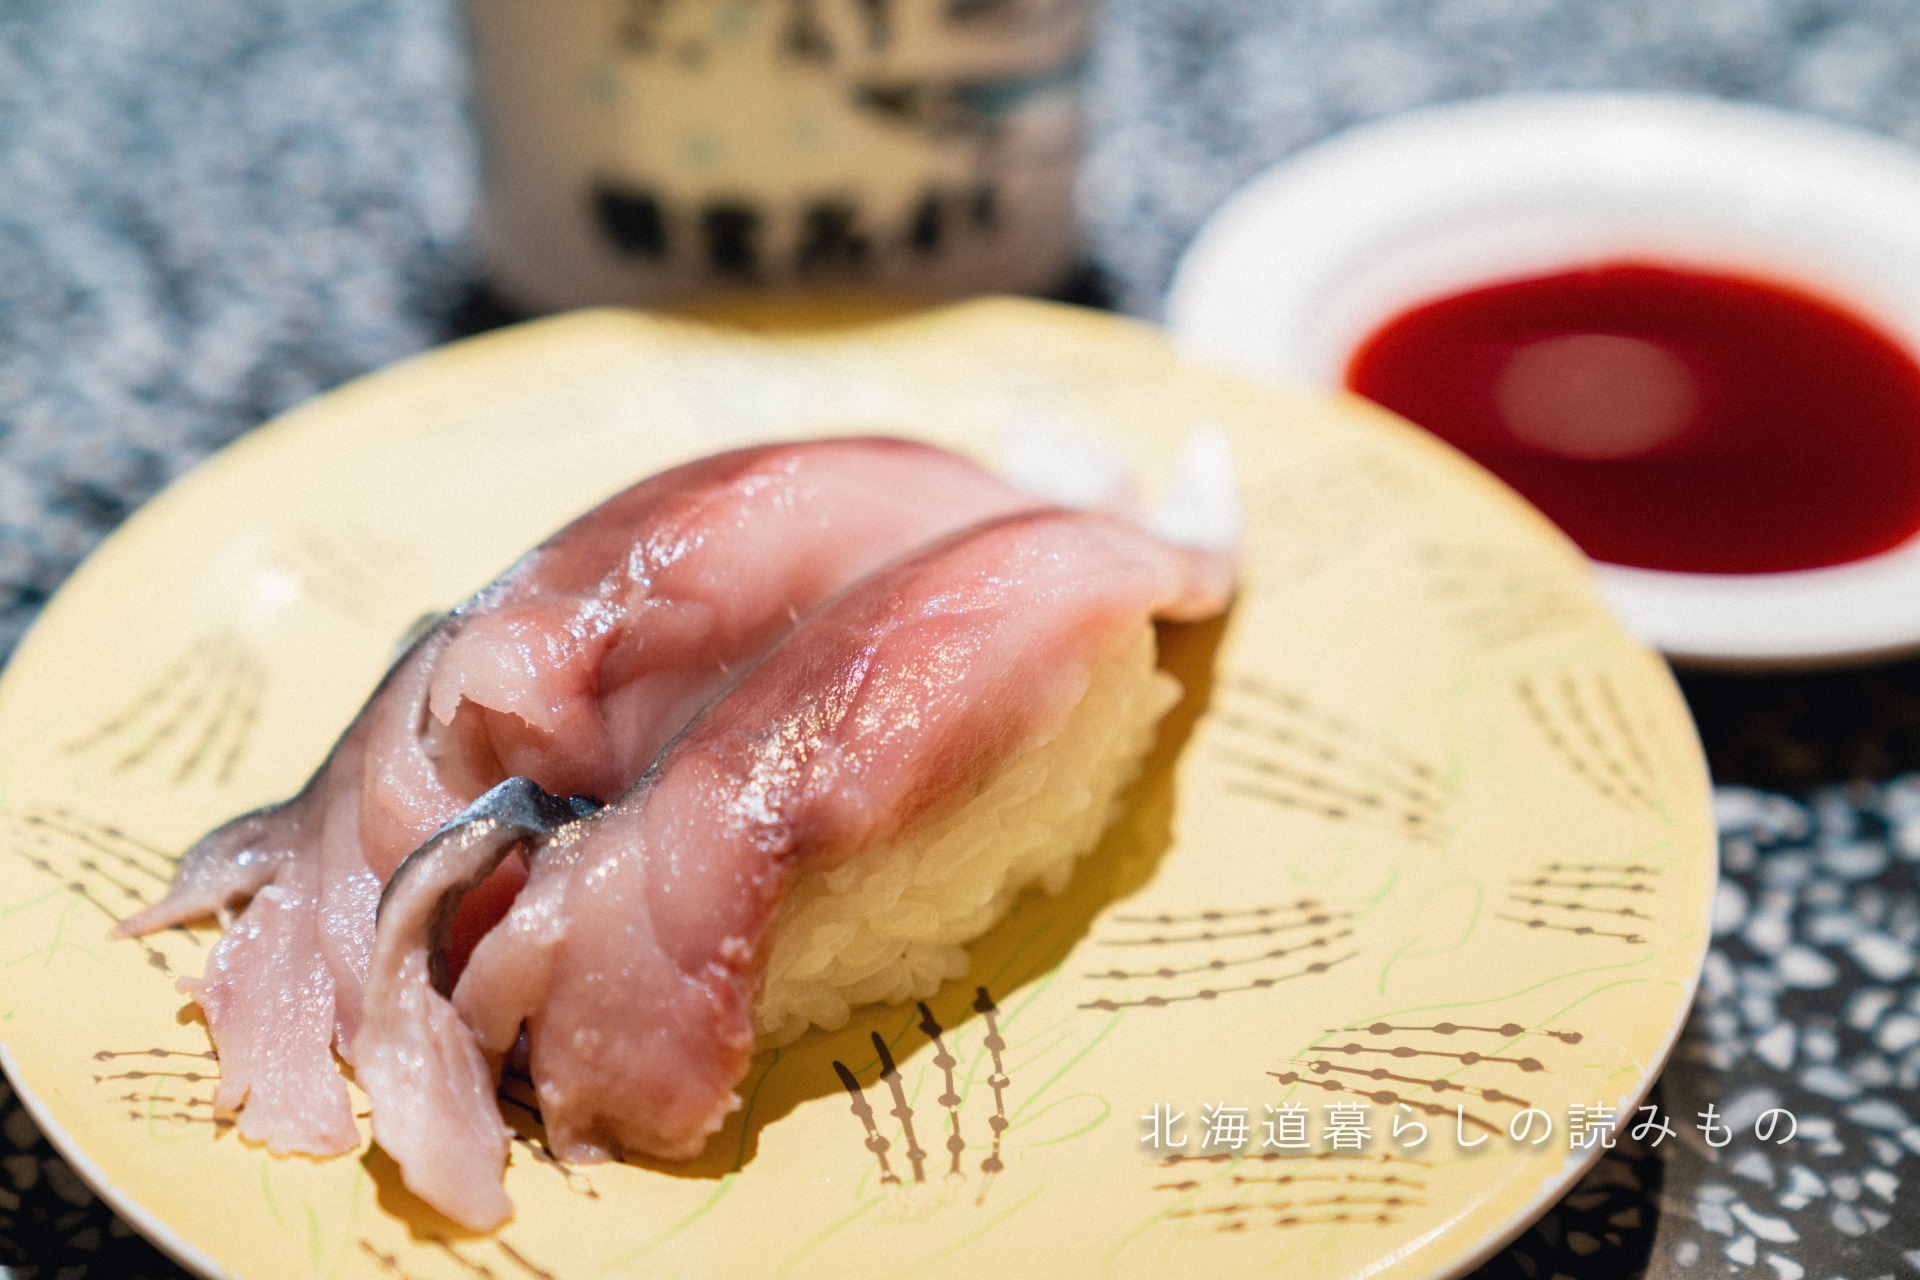 回転寿司 根室花まるのメニュー「薄〆しめさば」の写真